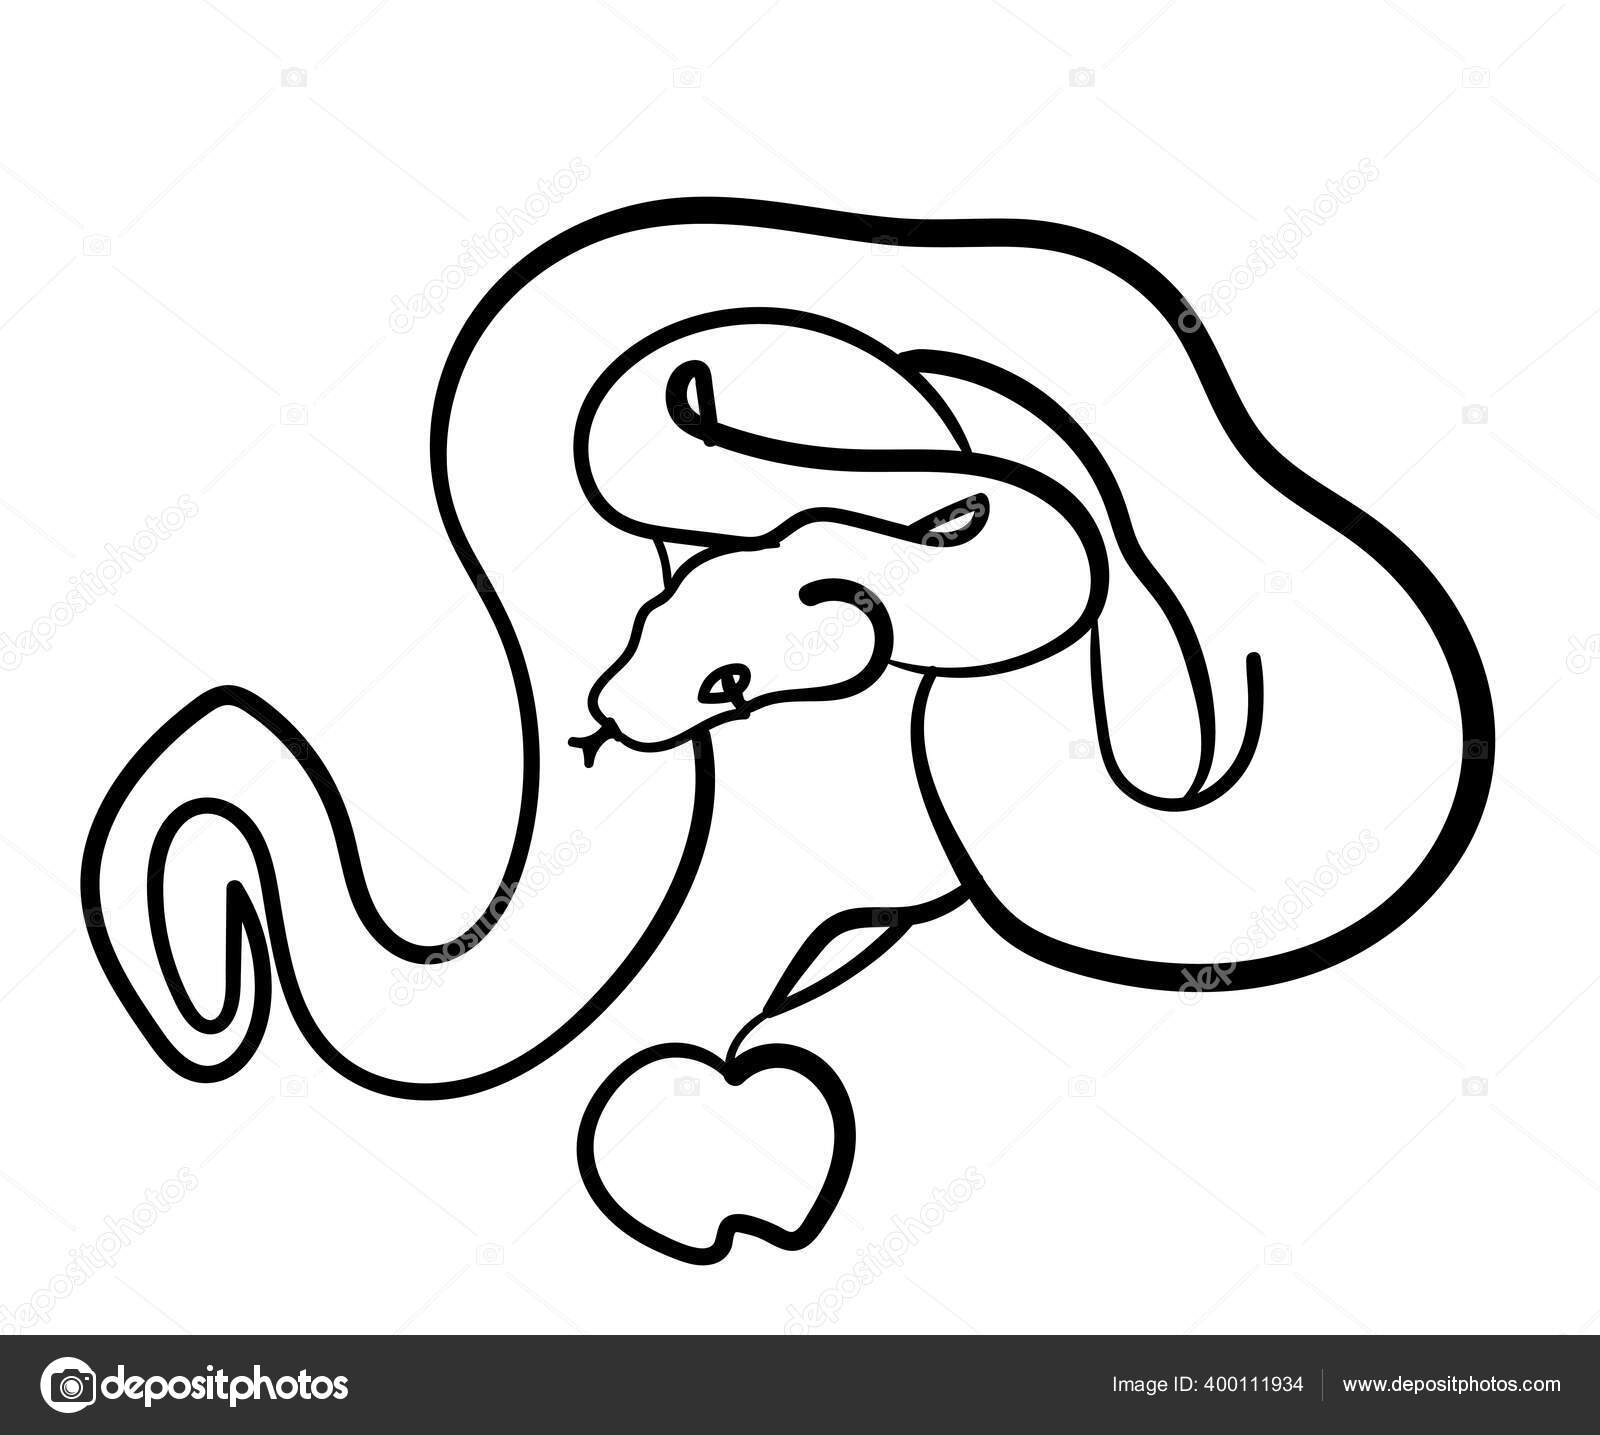 Cobra e maçã ilustração stock. Ilustração de tinta, réptil - 157164734